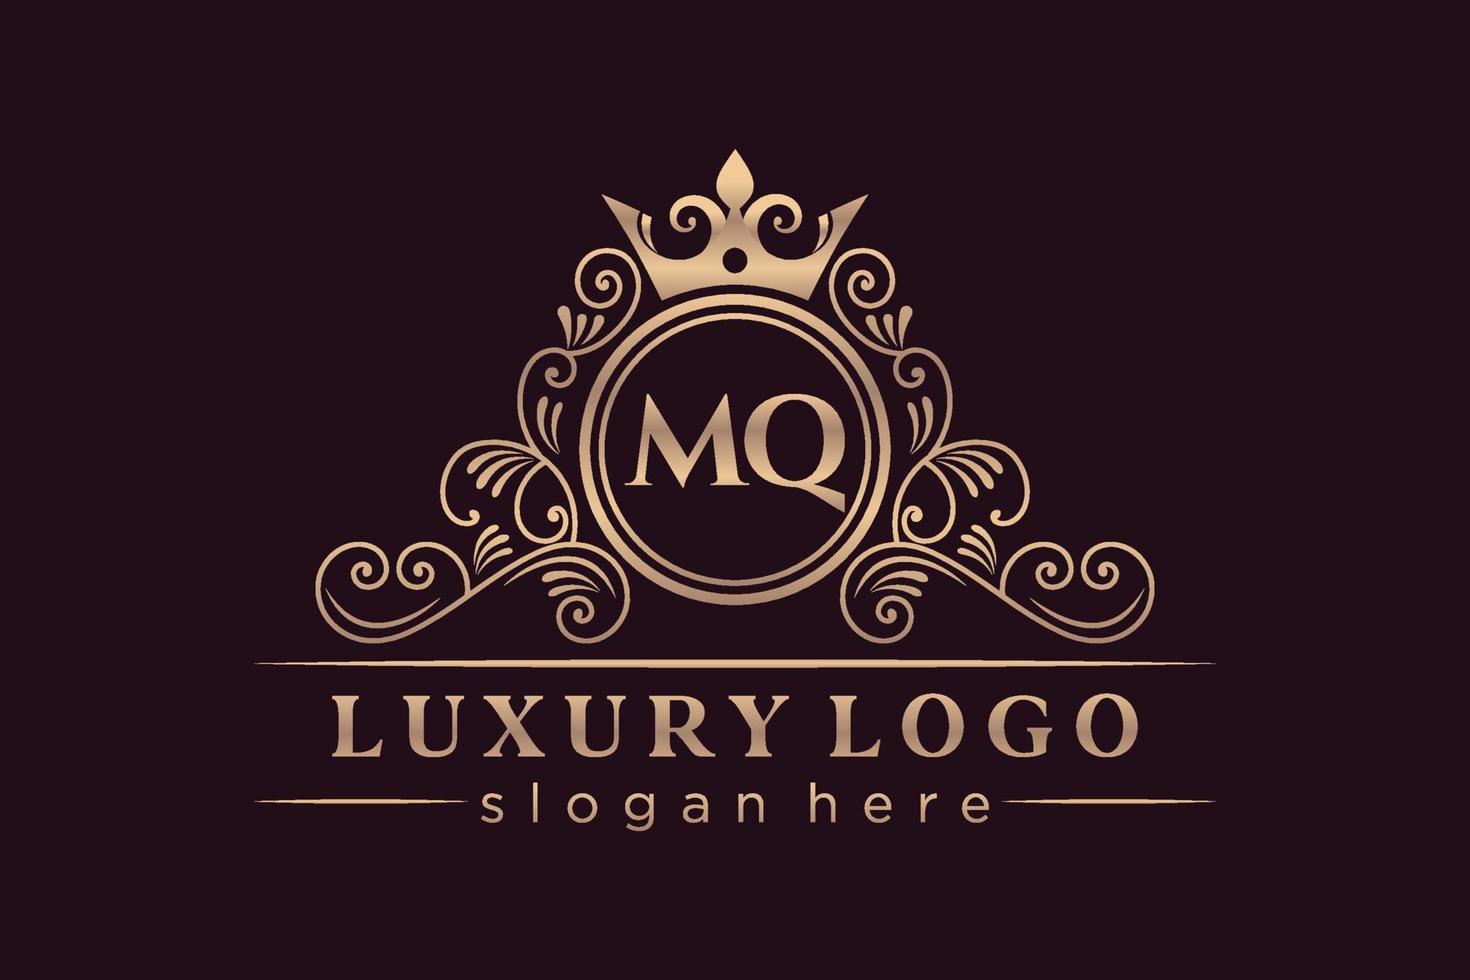 MQ Initial Letter Gold calligraphic feminine floral hand drawn heraldic monogram antique vintage style luxury logo design Premium Vector